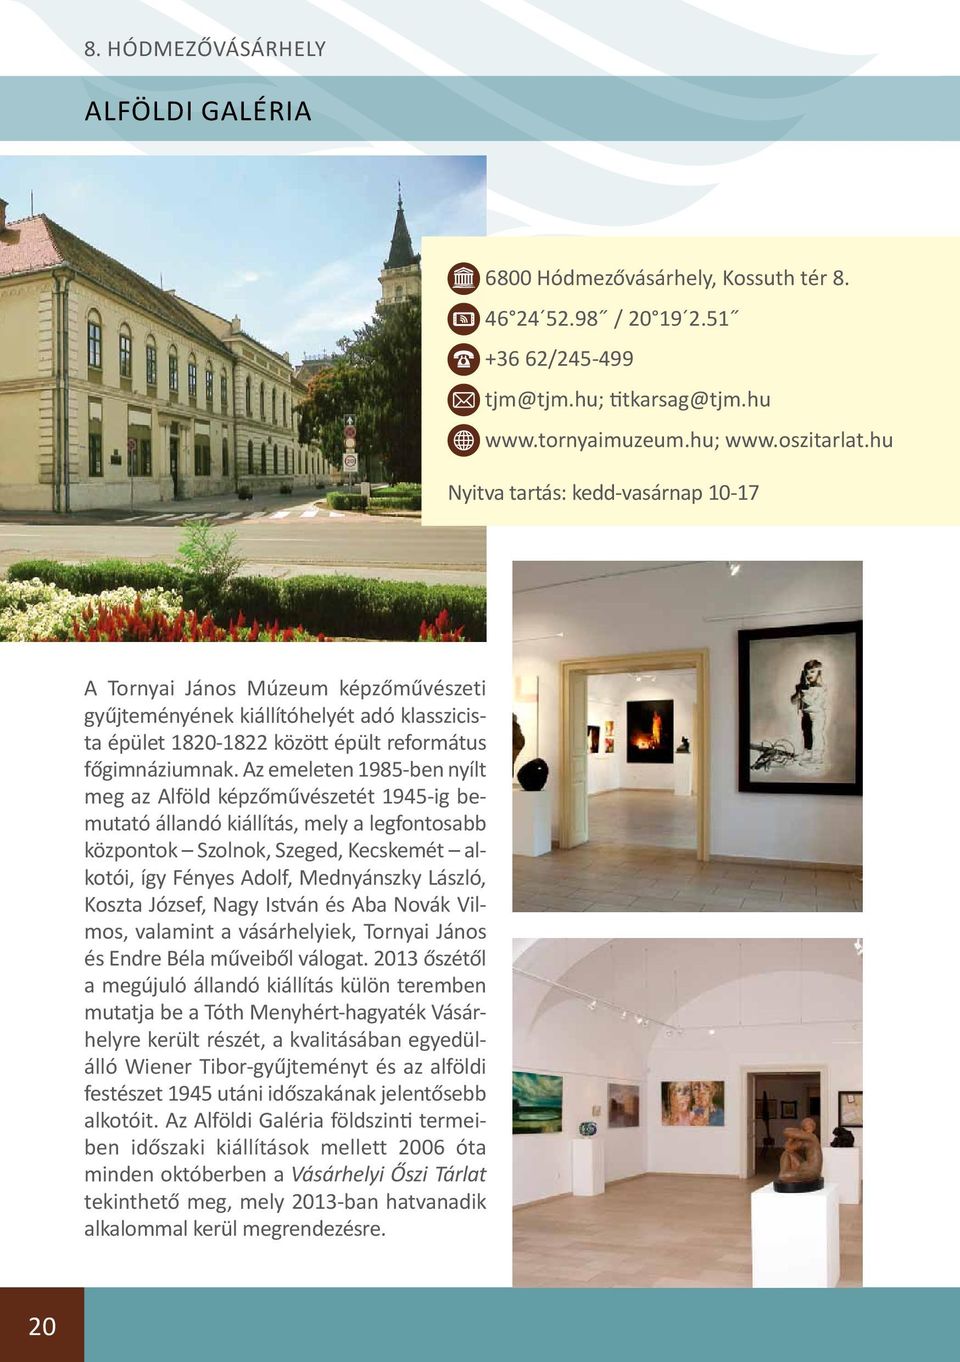 Az emeleten 1985-ben nyílt meg az Alföld képzőművészetét 1945-ig bemutató állandó kiállítás, mely a legfontosabb központok Szolnok, Szeged, Kecskemét alkotói, így Fényes Adolf, Mednyánszky László,